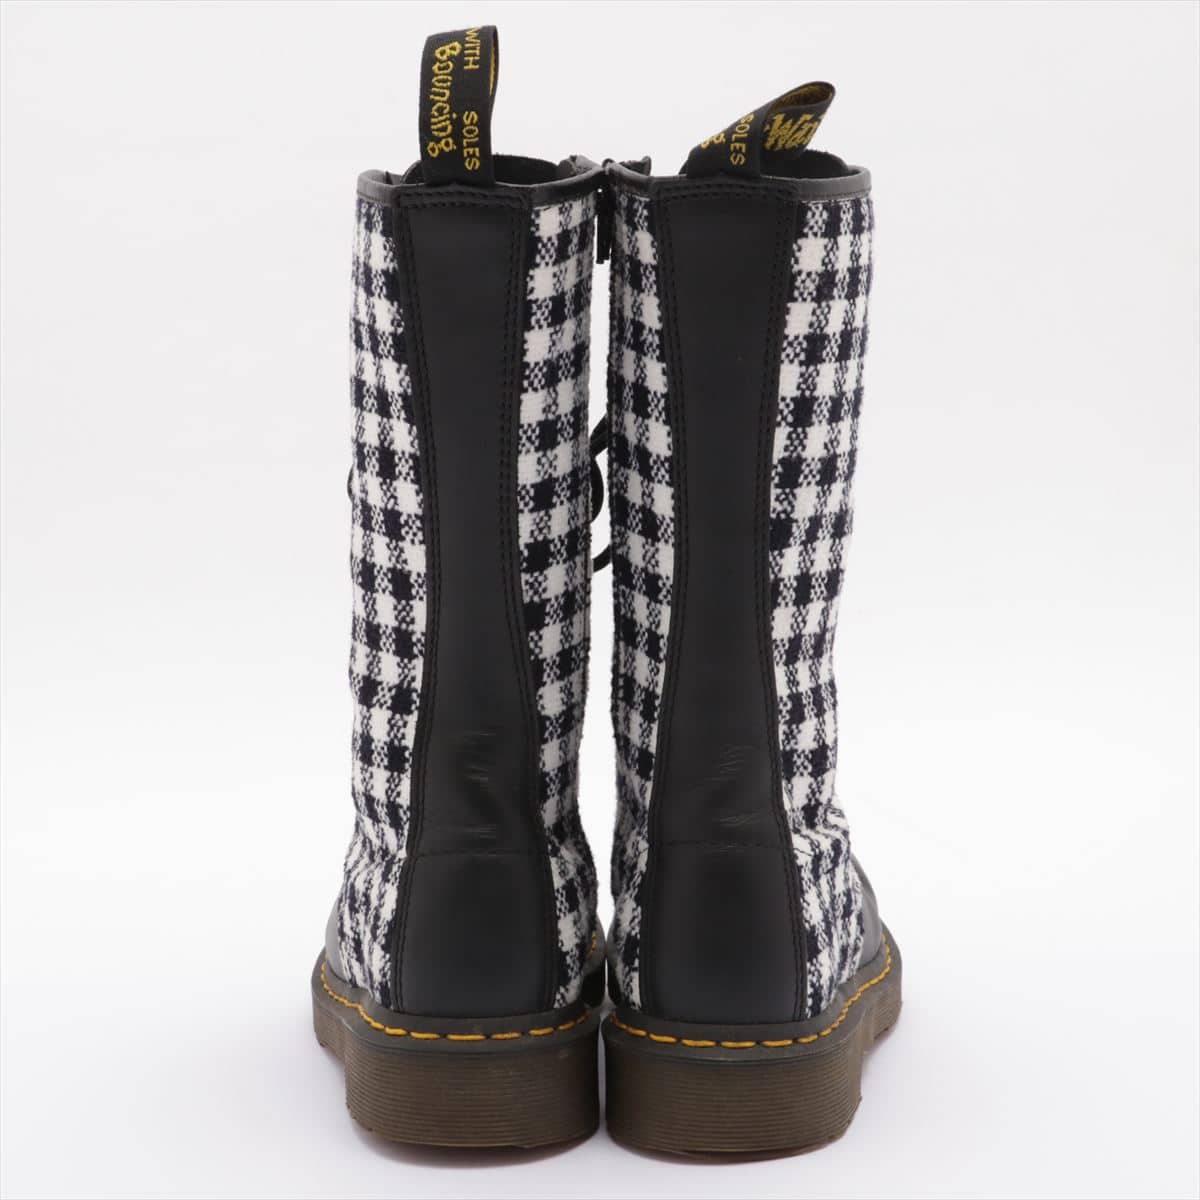 Dr. Martens Cotton & leather Long boots UK6 Ladies' Black × White 14 holes